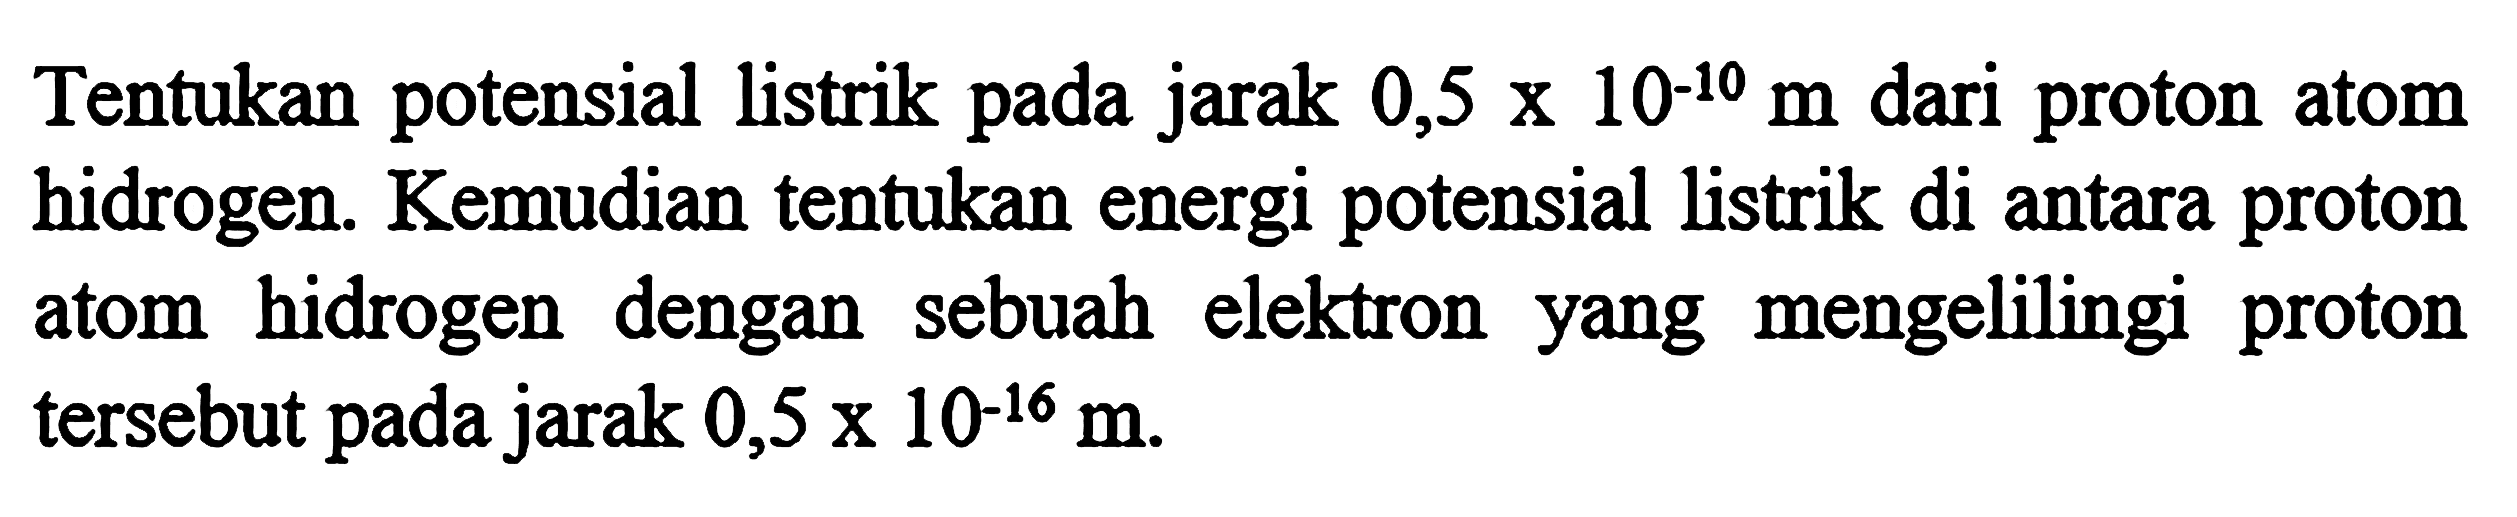 Tentukan potensial listrik pada jarak 0,5 x 10^-10 m dari proton atom hidrogen. Kemudian tentukan energi potensial listrik di antara proton atom hidrogen dengan sebuah elektron yang mengelilingi proton tersebut pada jarak 0,5 x 10^-16 m.